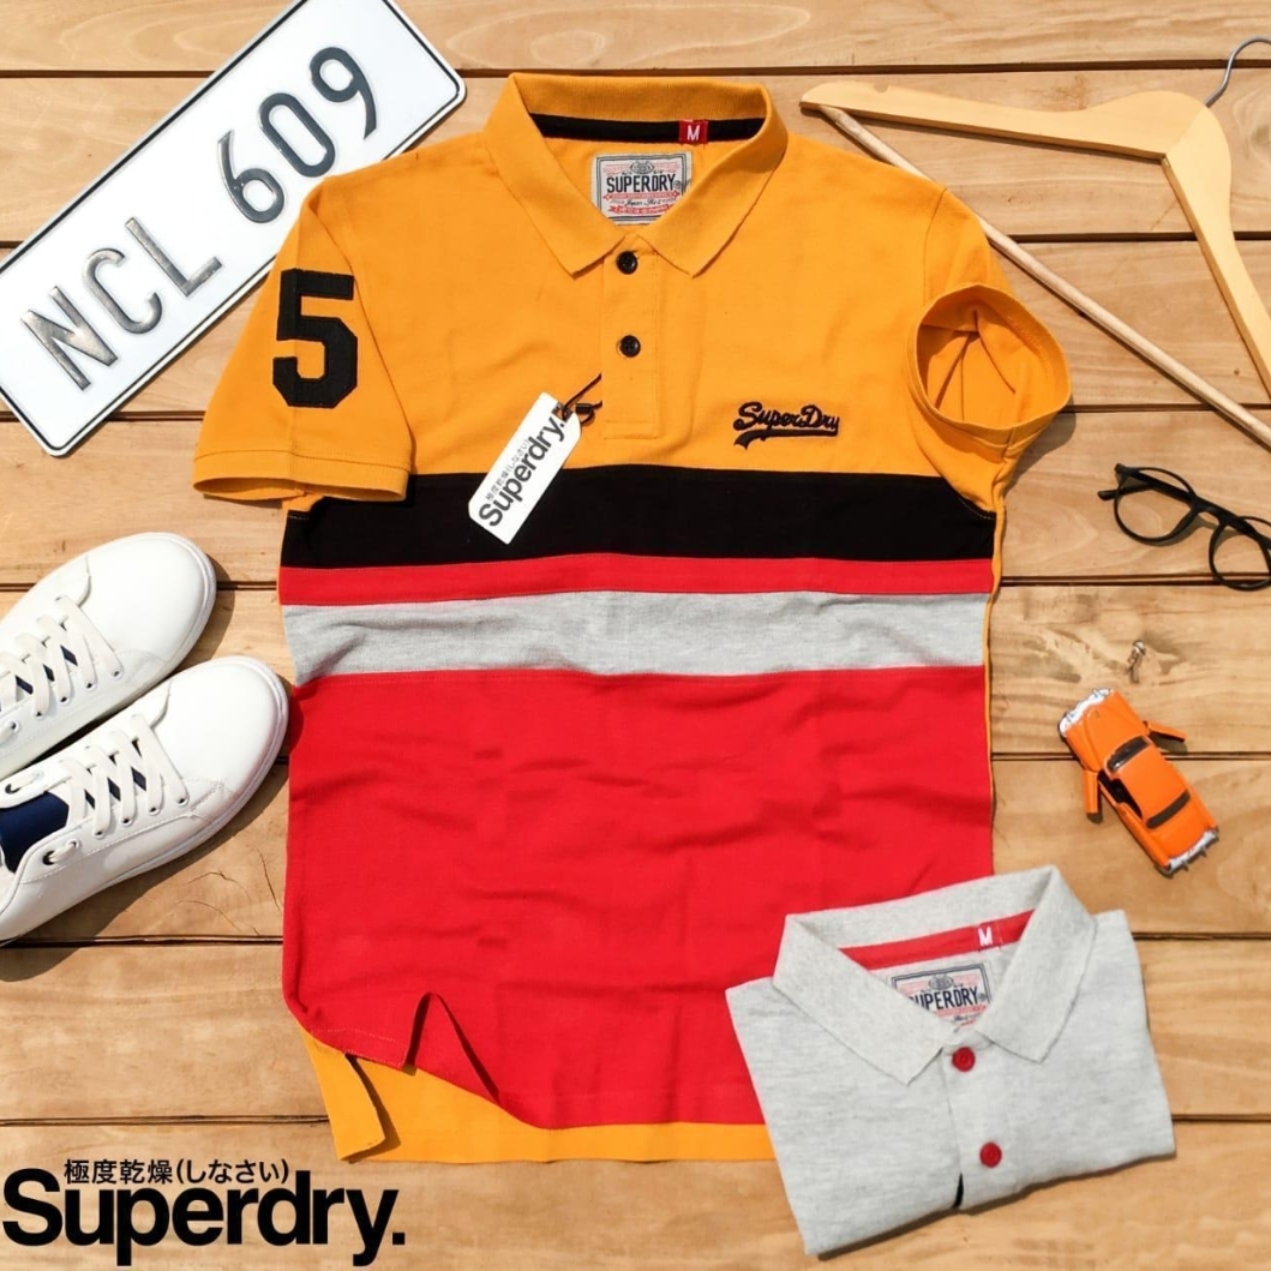 Superdry Tshirts -144